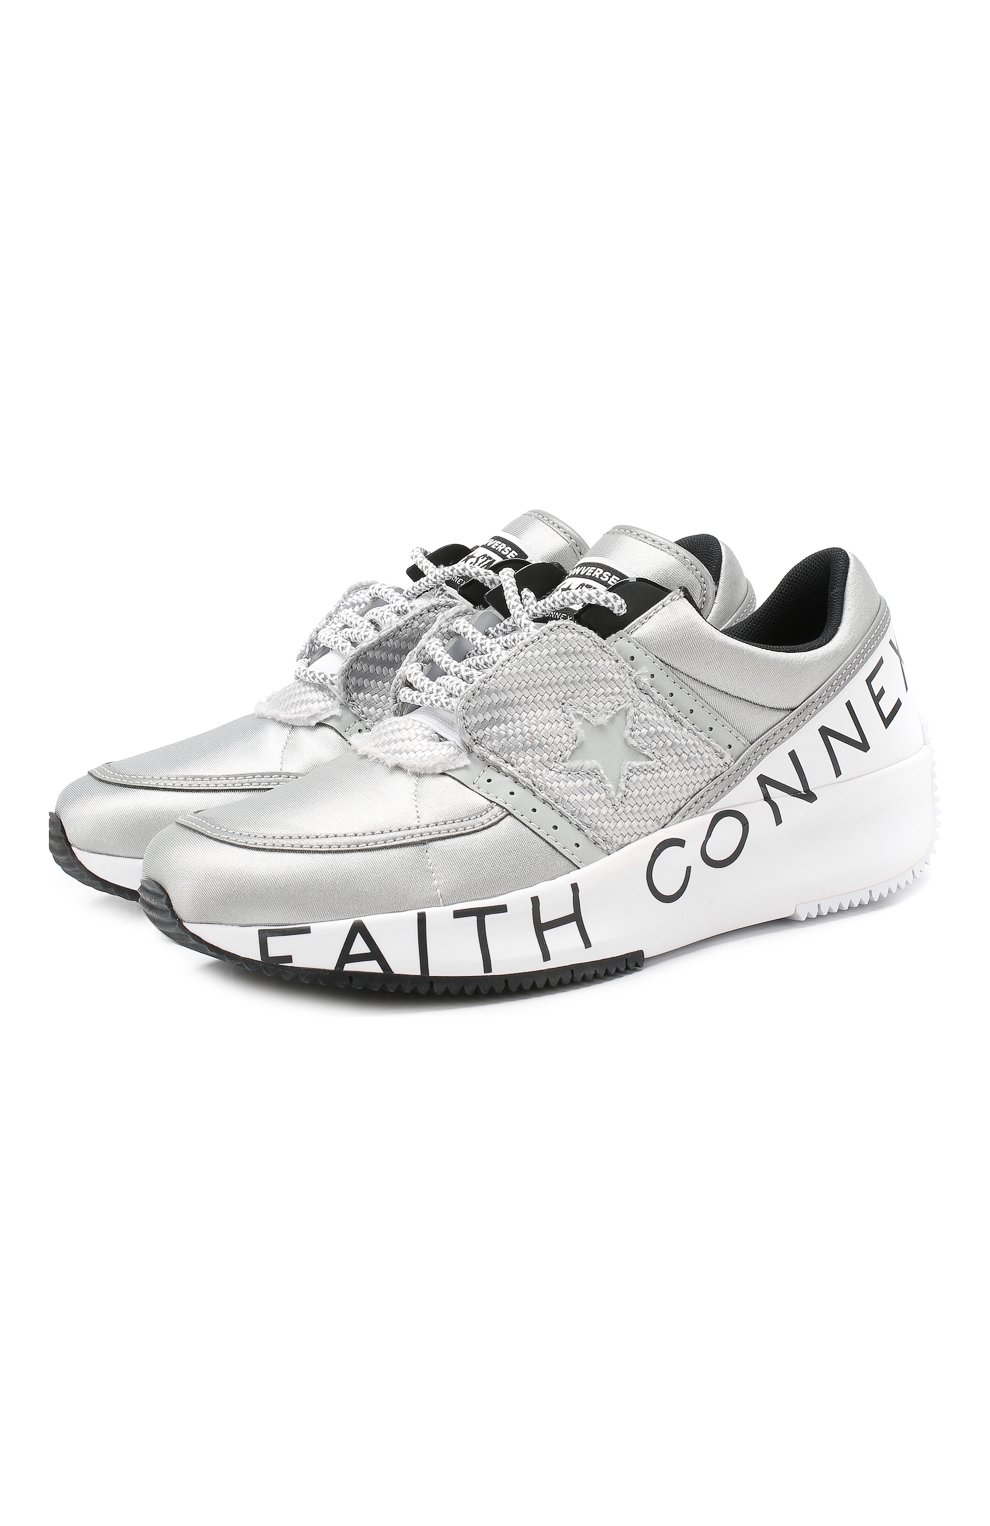 converse faith connexion